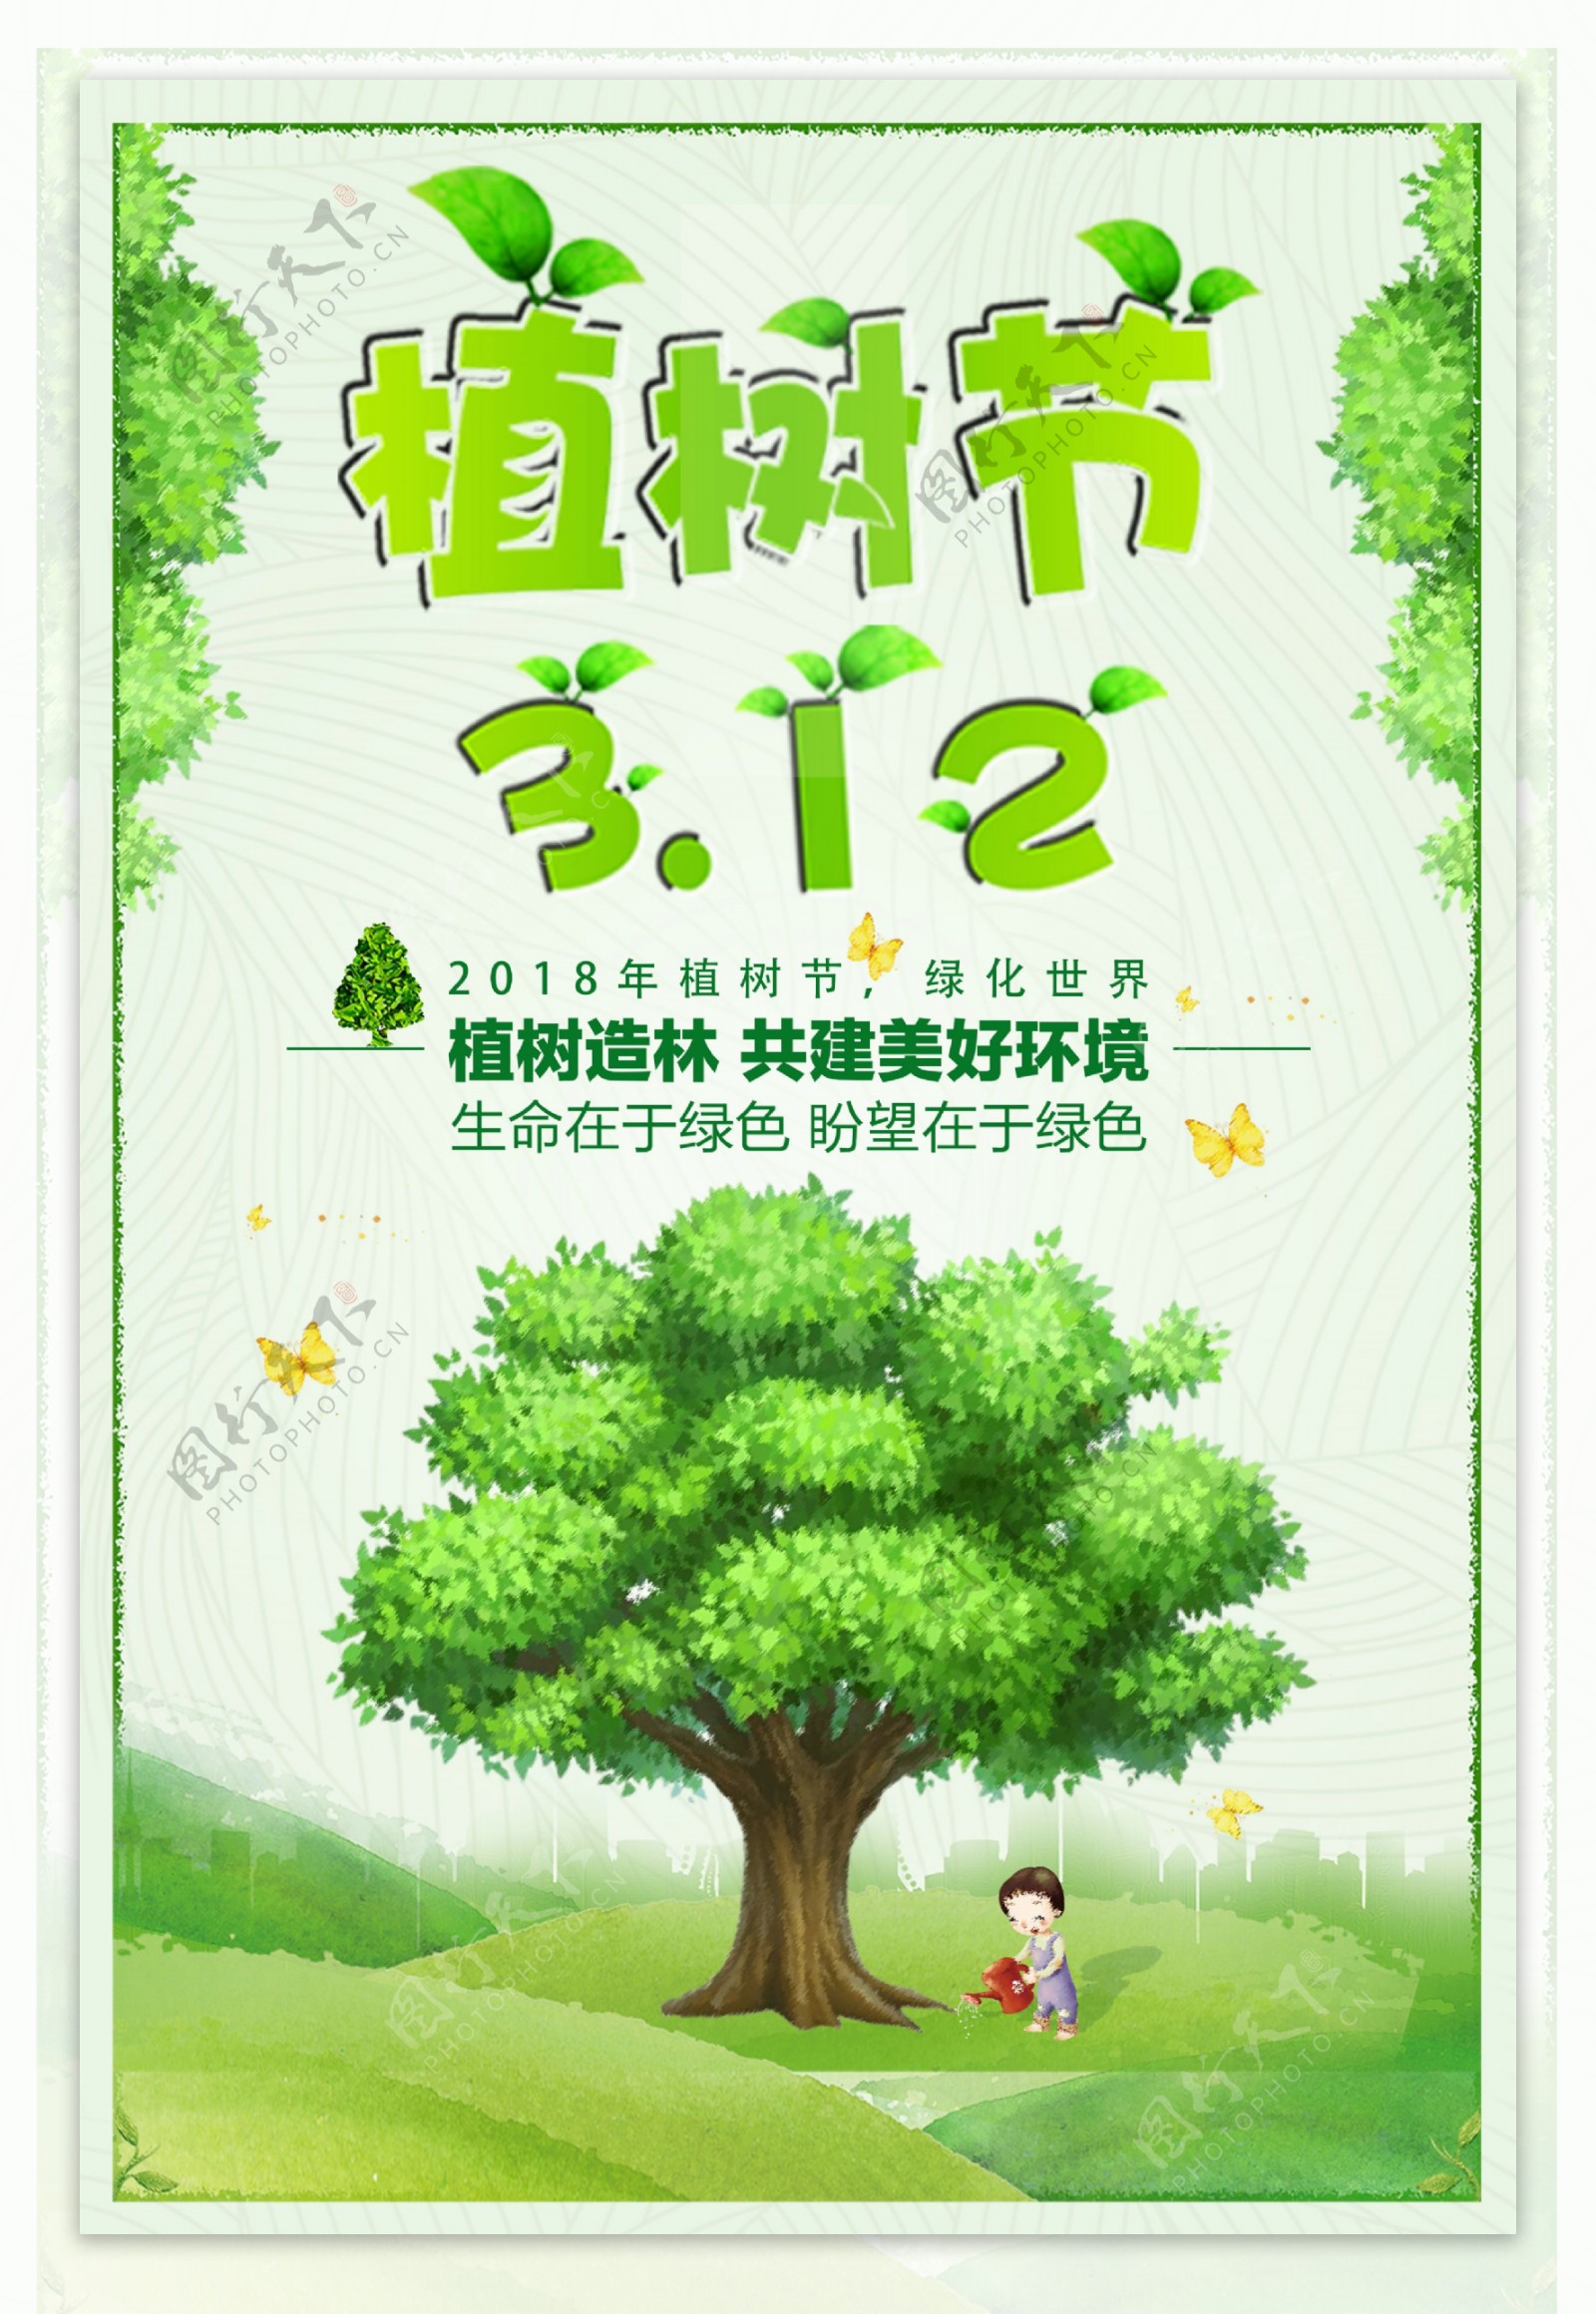 绿色环保植物节海报原创